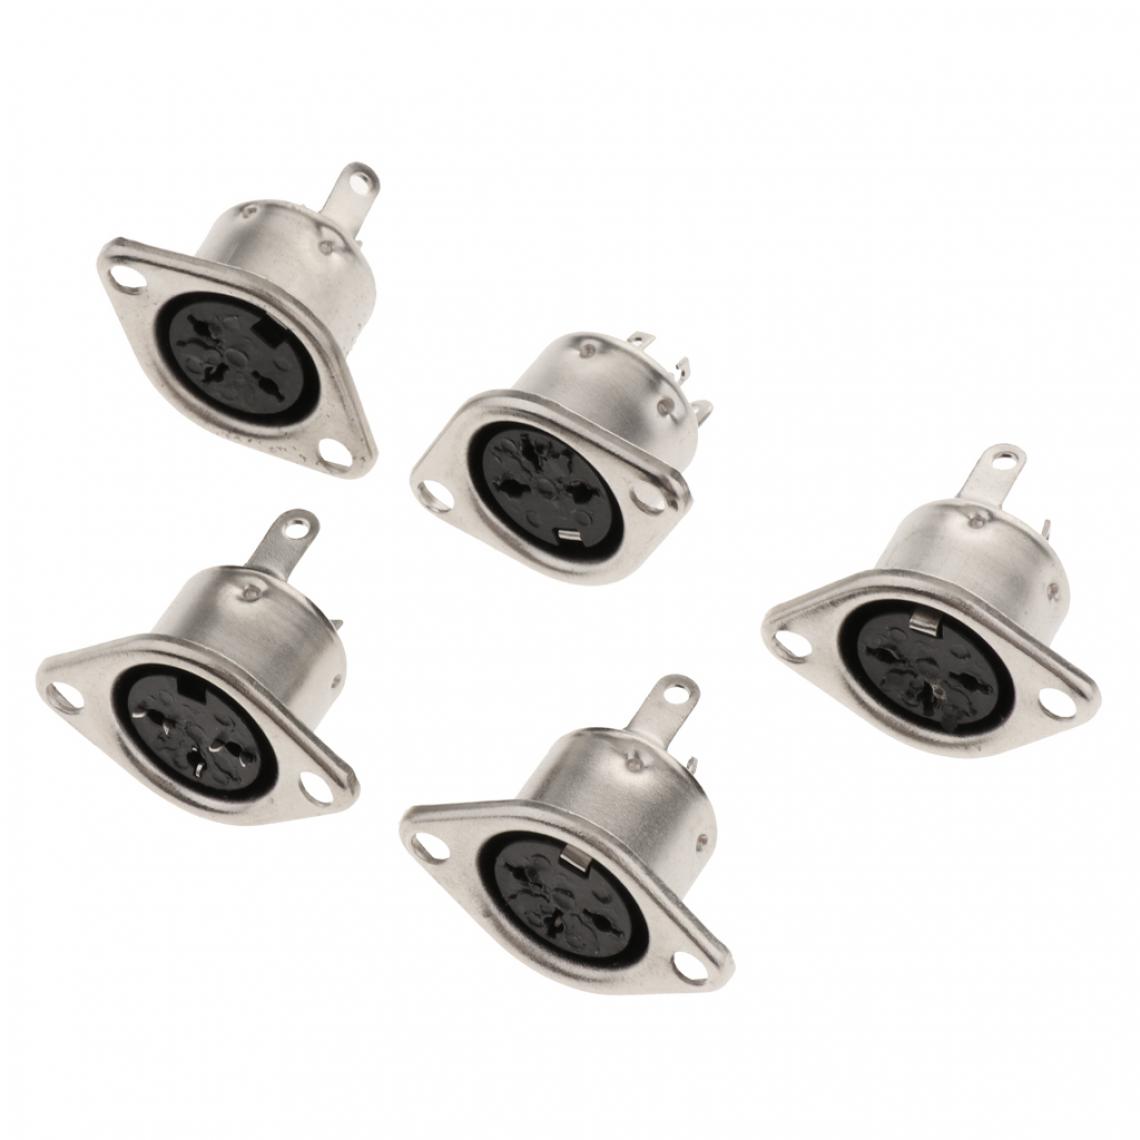 marque generique - DIN Mini Pin Femelle Prise Audio Connecteur Socket pour Clavier / Souris DIY 8 Broches - Personnalisation du PC